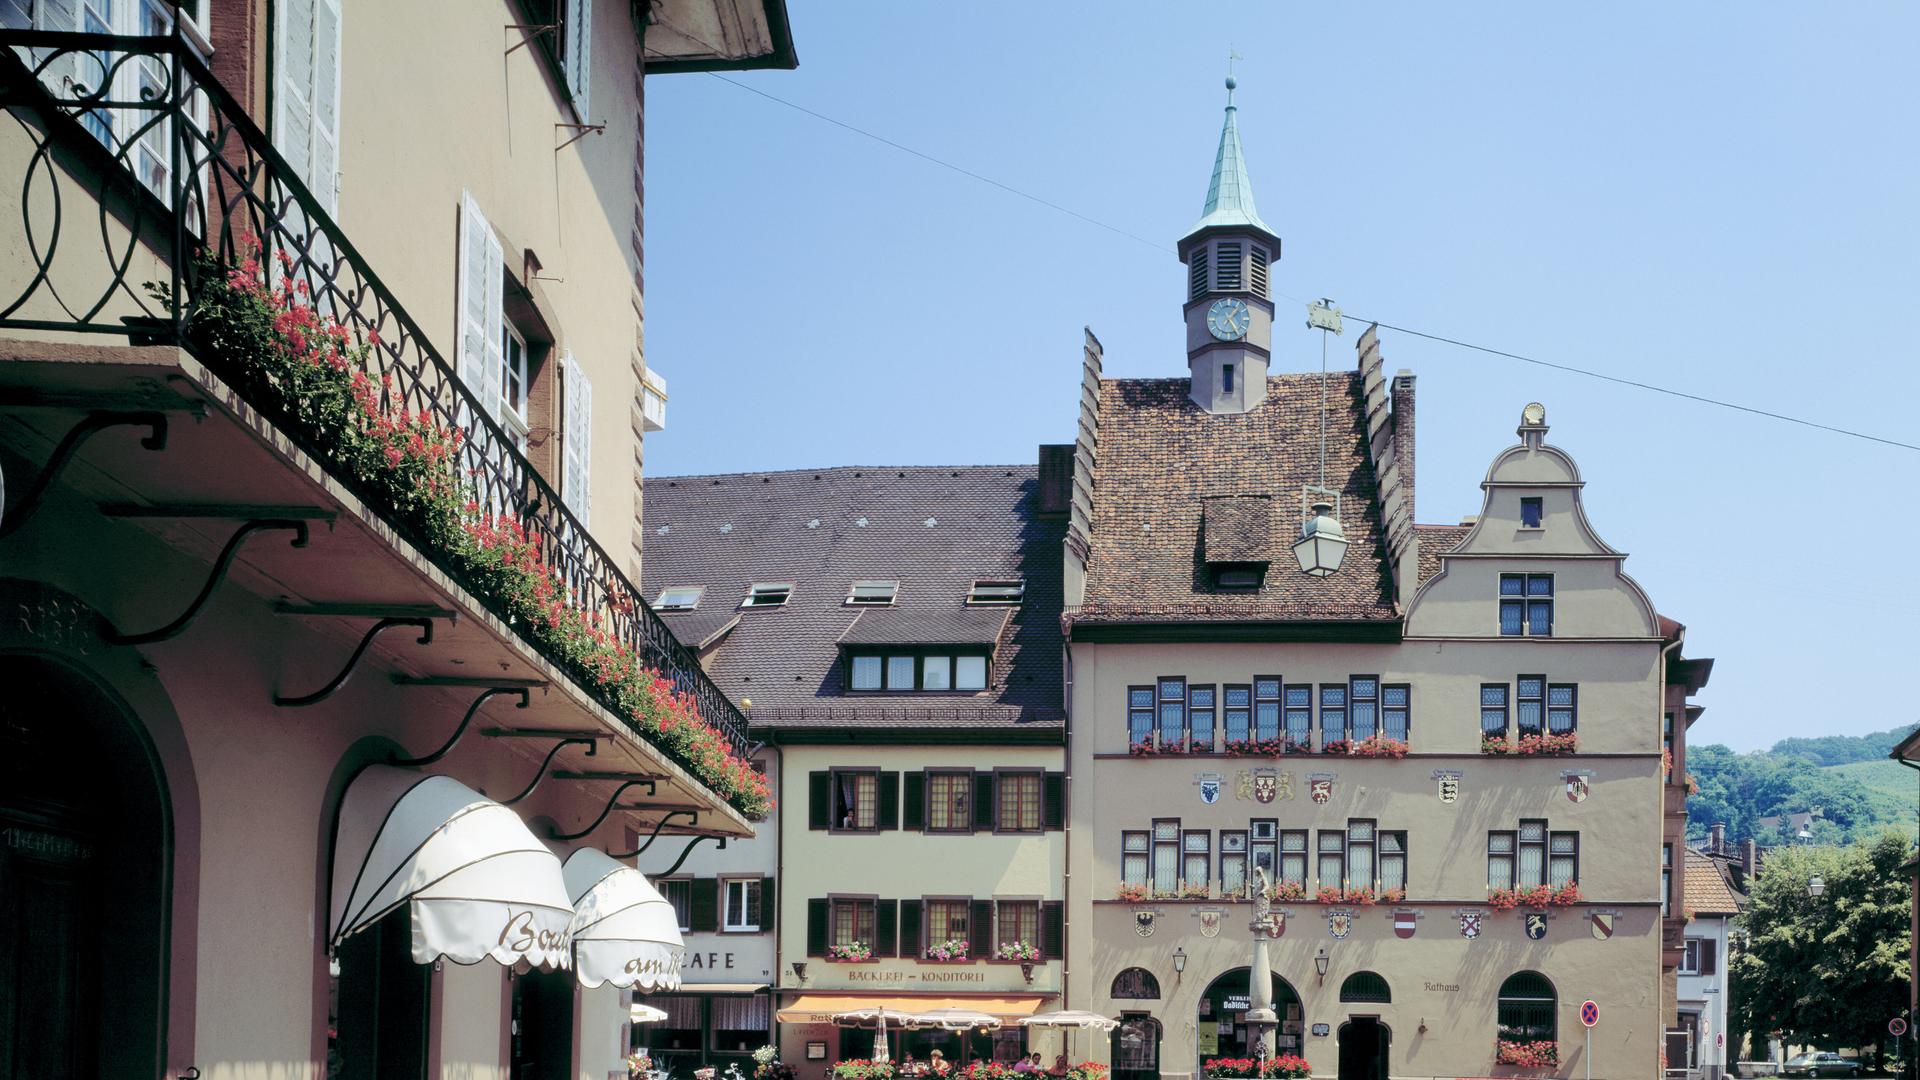 Marktplatz in Staufen im Breisgau mit Rathaus.